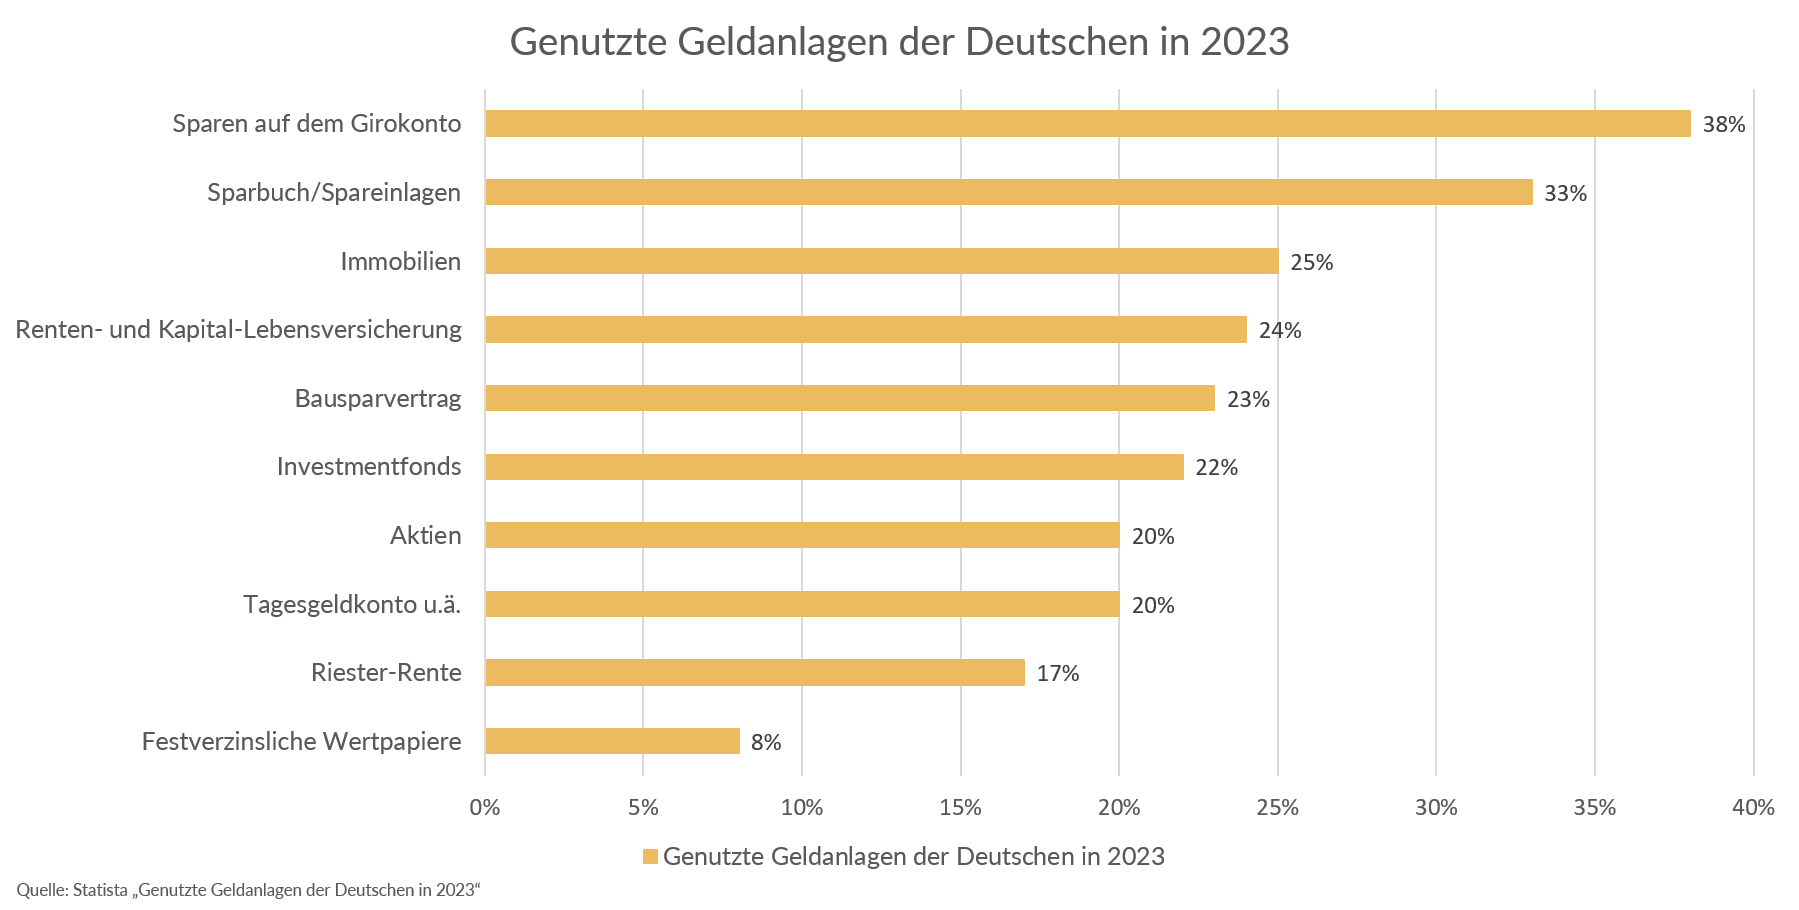 Genutzte Geldanlagen der Deutschen in 2023